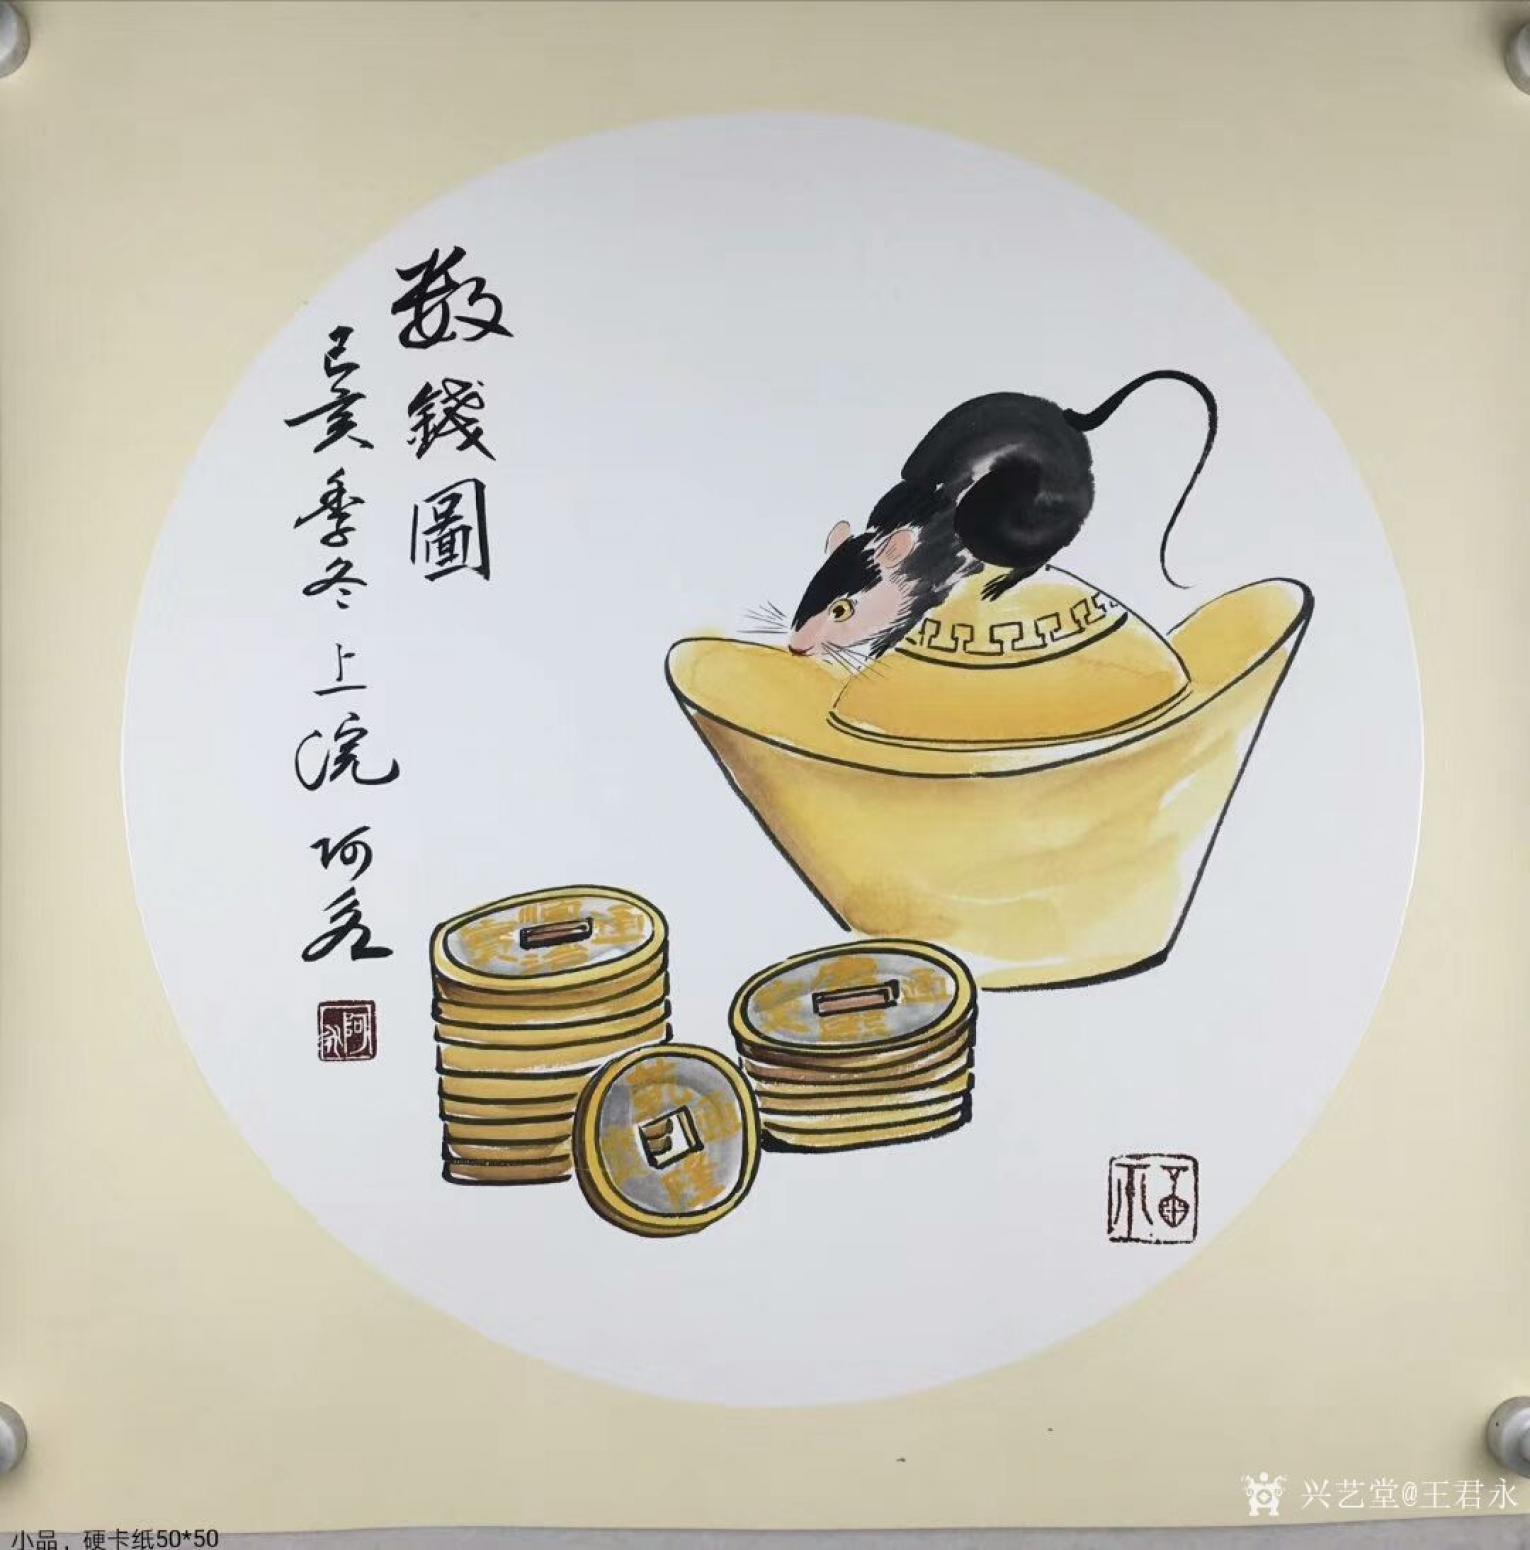 王君永国画作品《动物老鼠-数钱图》